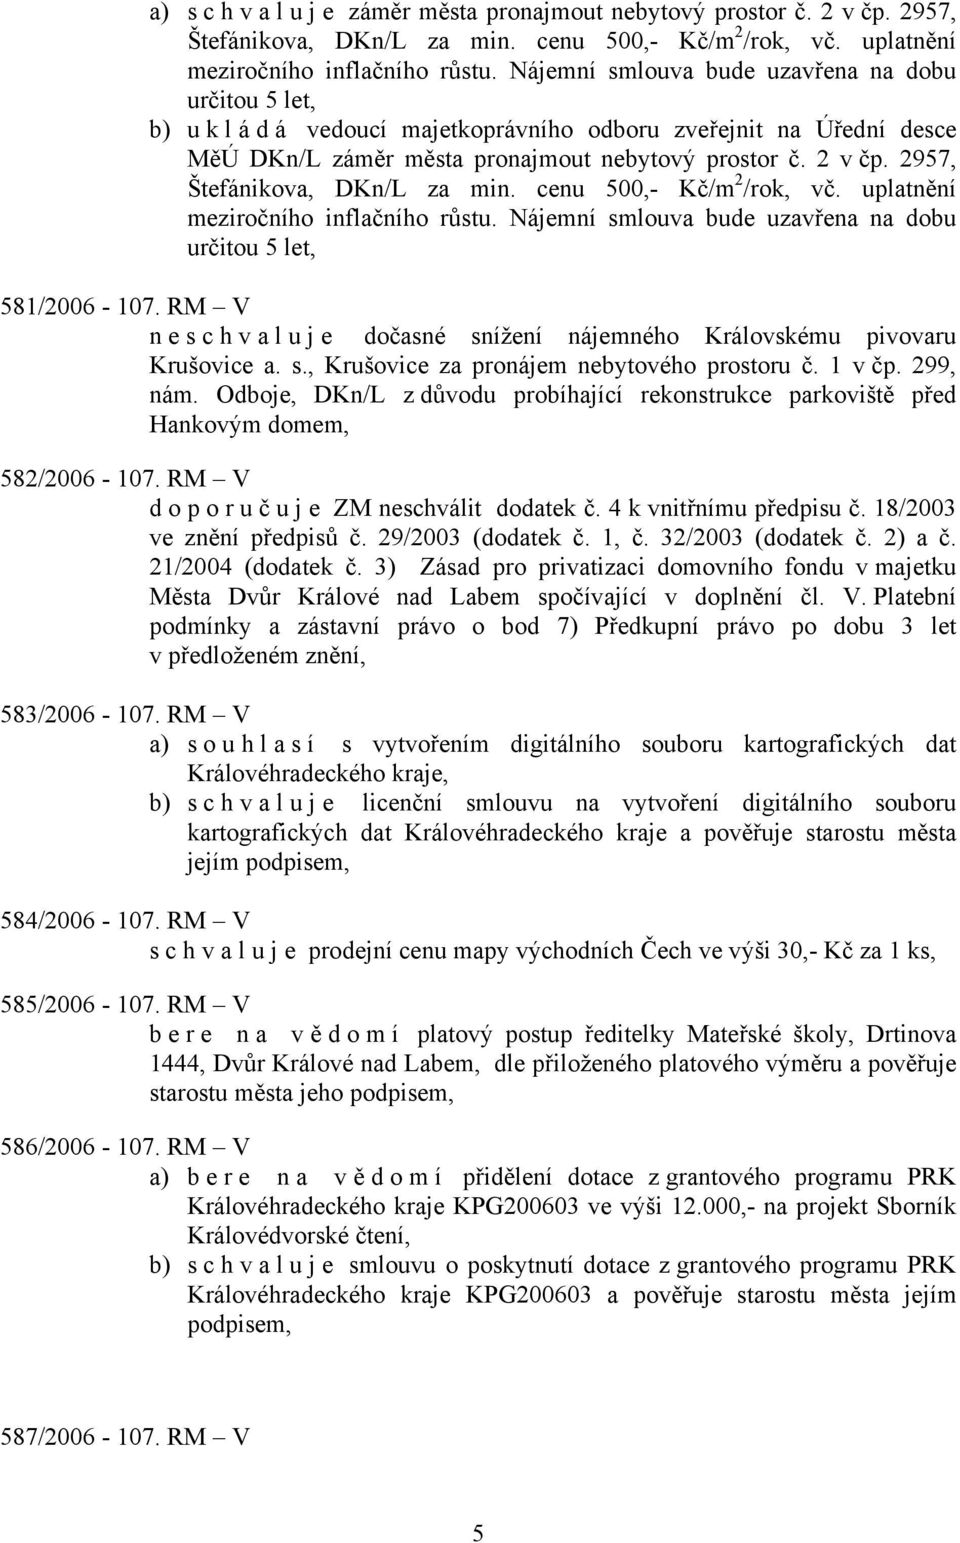 2957, Štefánikova, DKn/L za min. cenu 500,- Kč/m 2 /rok, vč. uplatnění meziročního inflačního růstu. Nájemní smlouva bude uzavřena na dobu určitou 5 let, 581/2006-107.